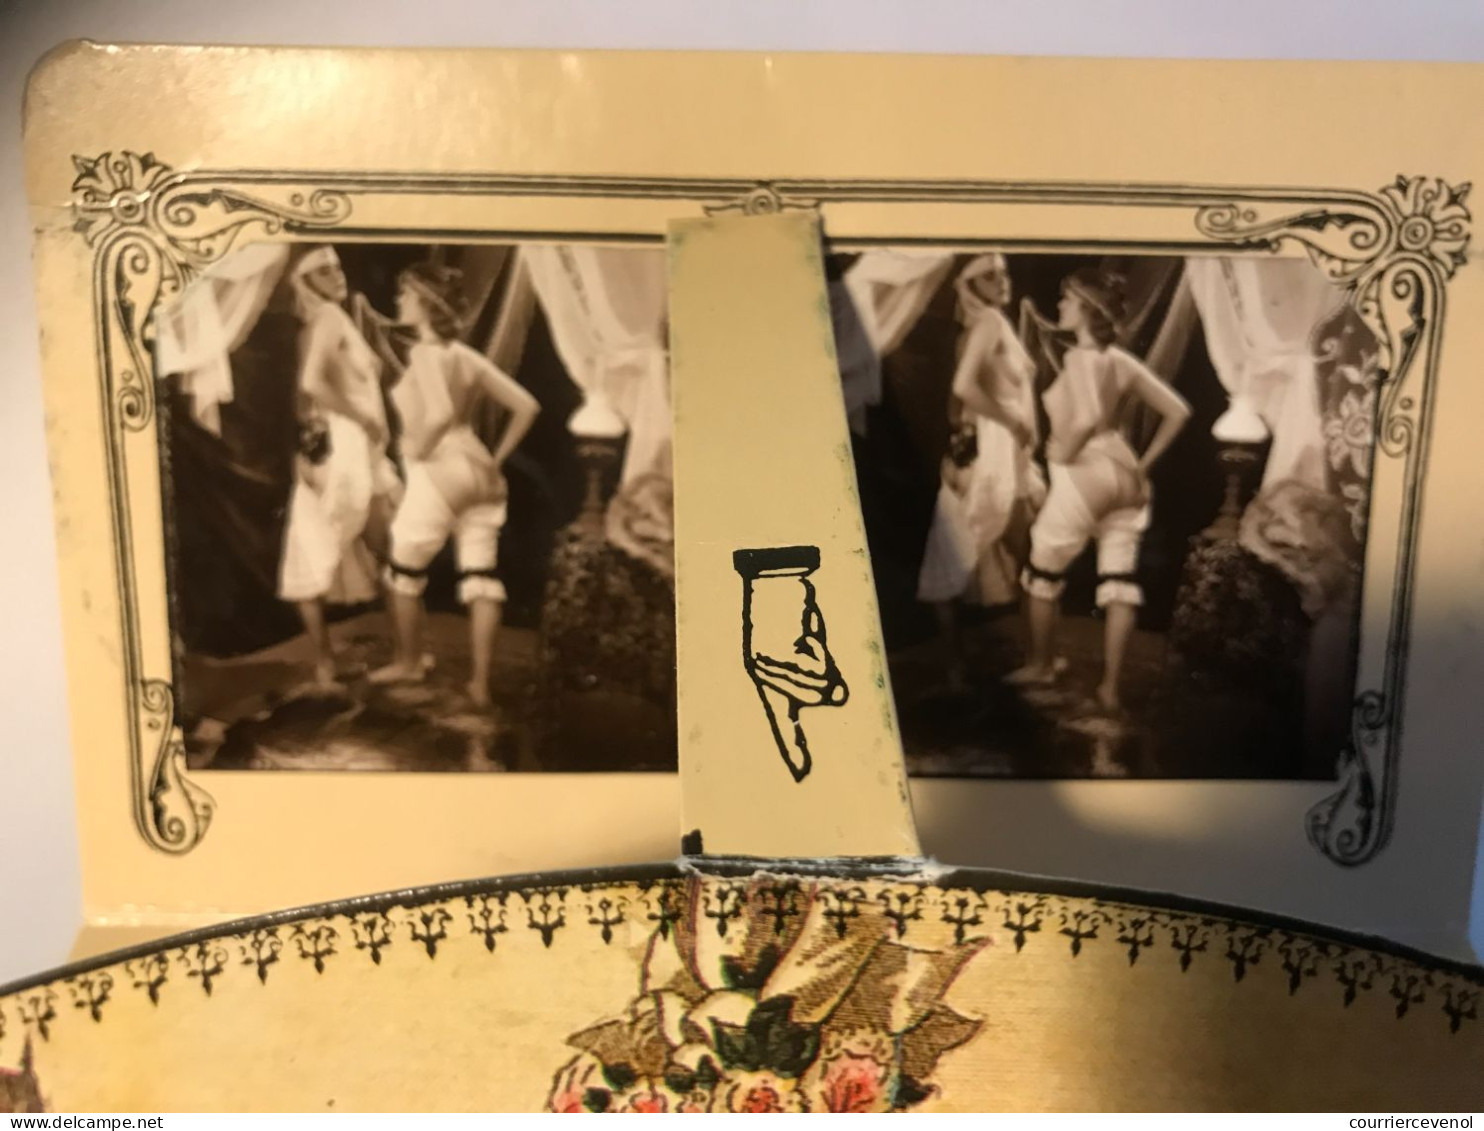 CPSM - Appareil Stéréoscopique En Carton Fort, Vue érotique, Formant Carte Postale Une Fois Replié. 10,5cm X 15cm - Stereoscope Cards